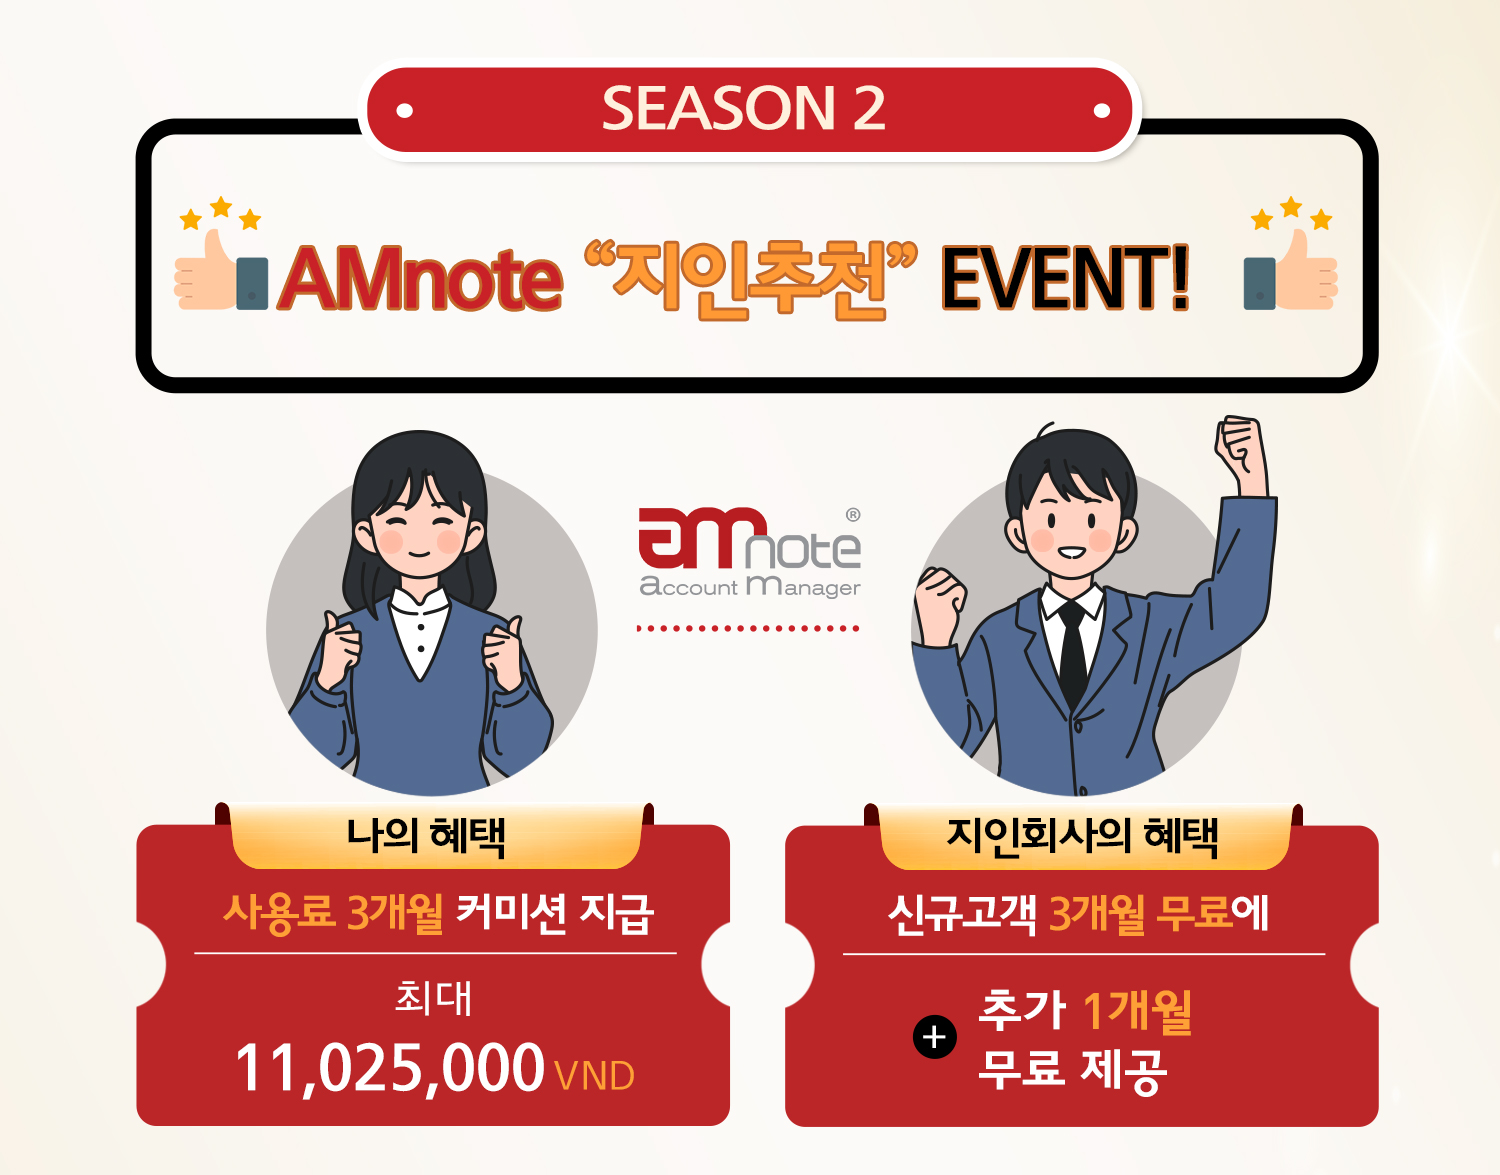 “AMnote 지인추천 이벤트 –  Season 2” 안내